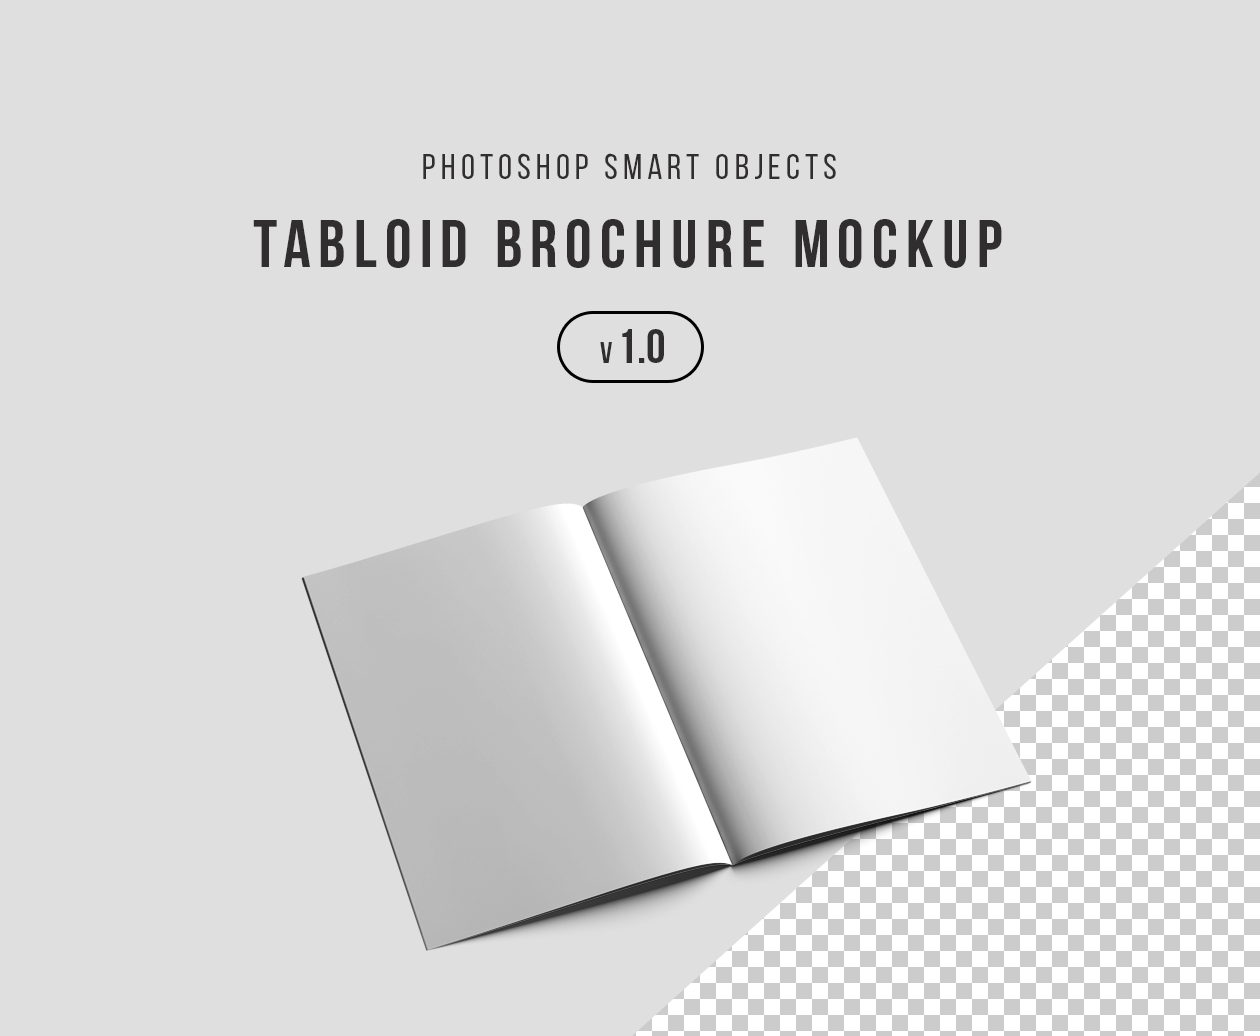 产品手册/宣传册设计效果图样机模板 Tabloid Brochure Mockup – Photoshop插图